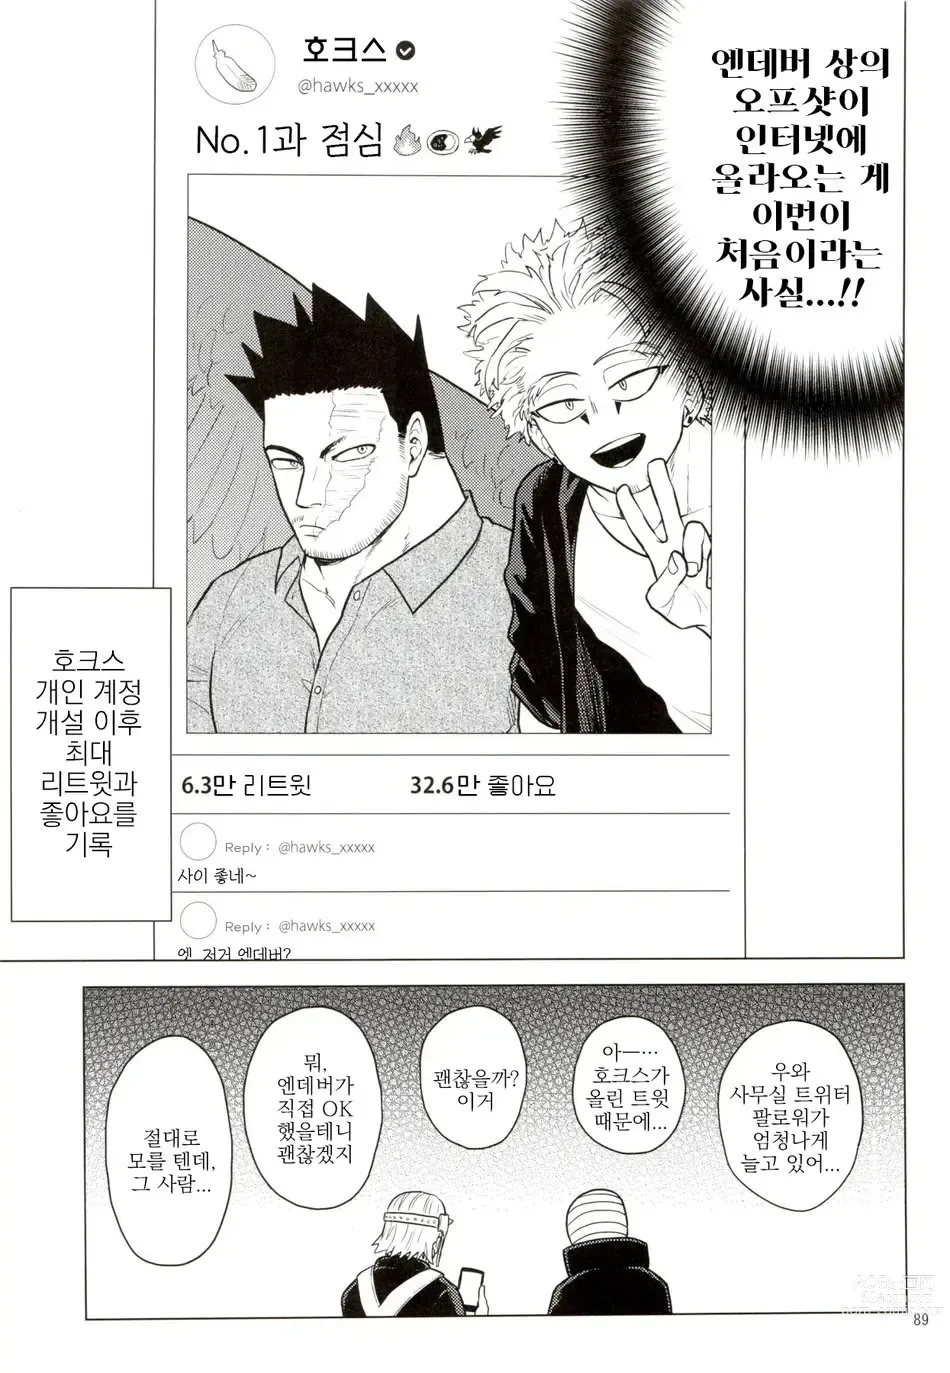 Page 88 of doujinshi Enholog #01